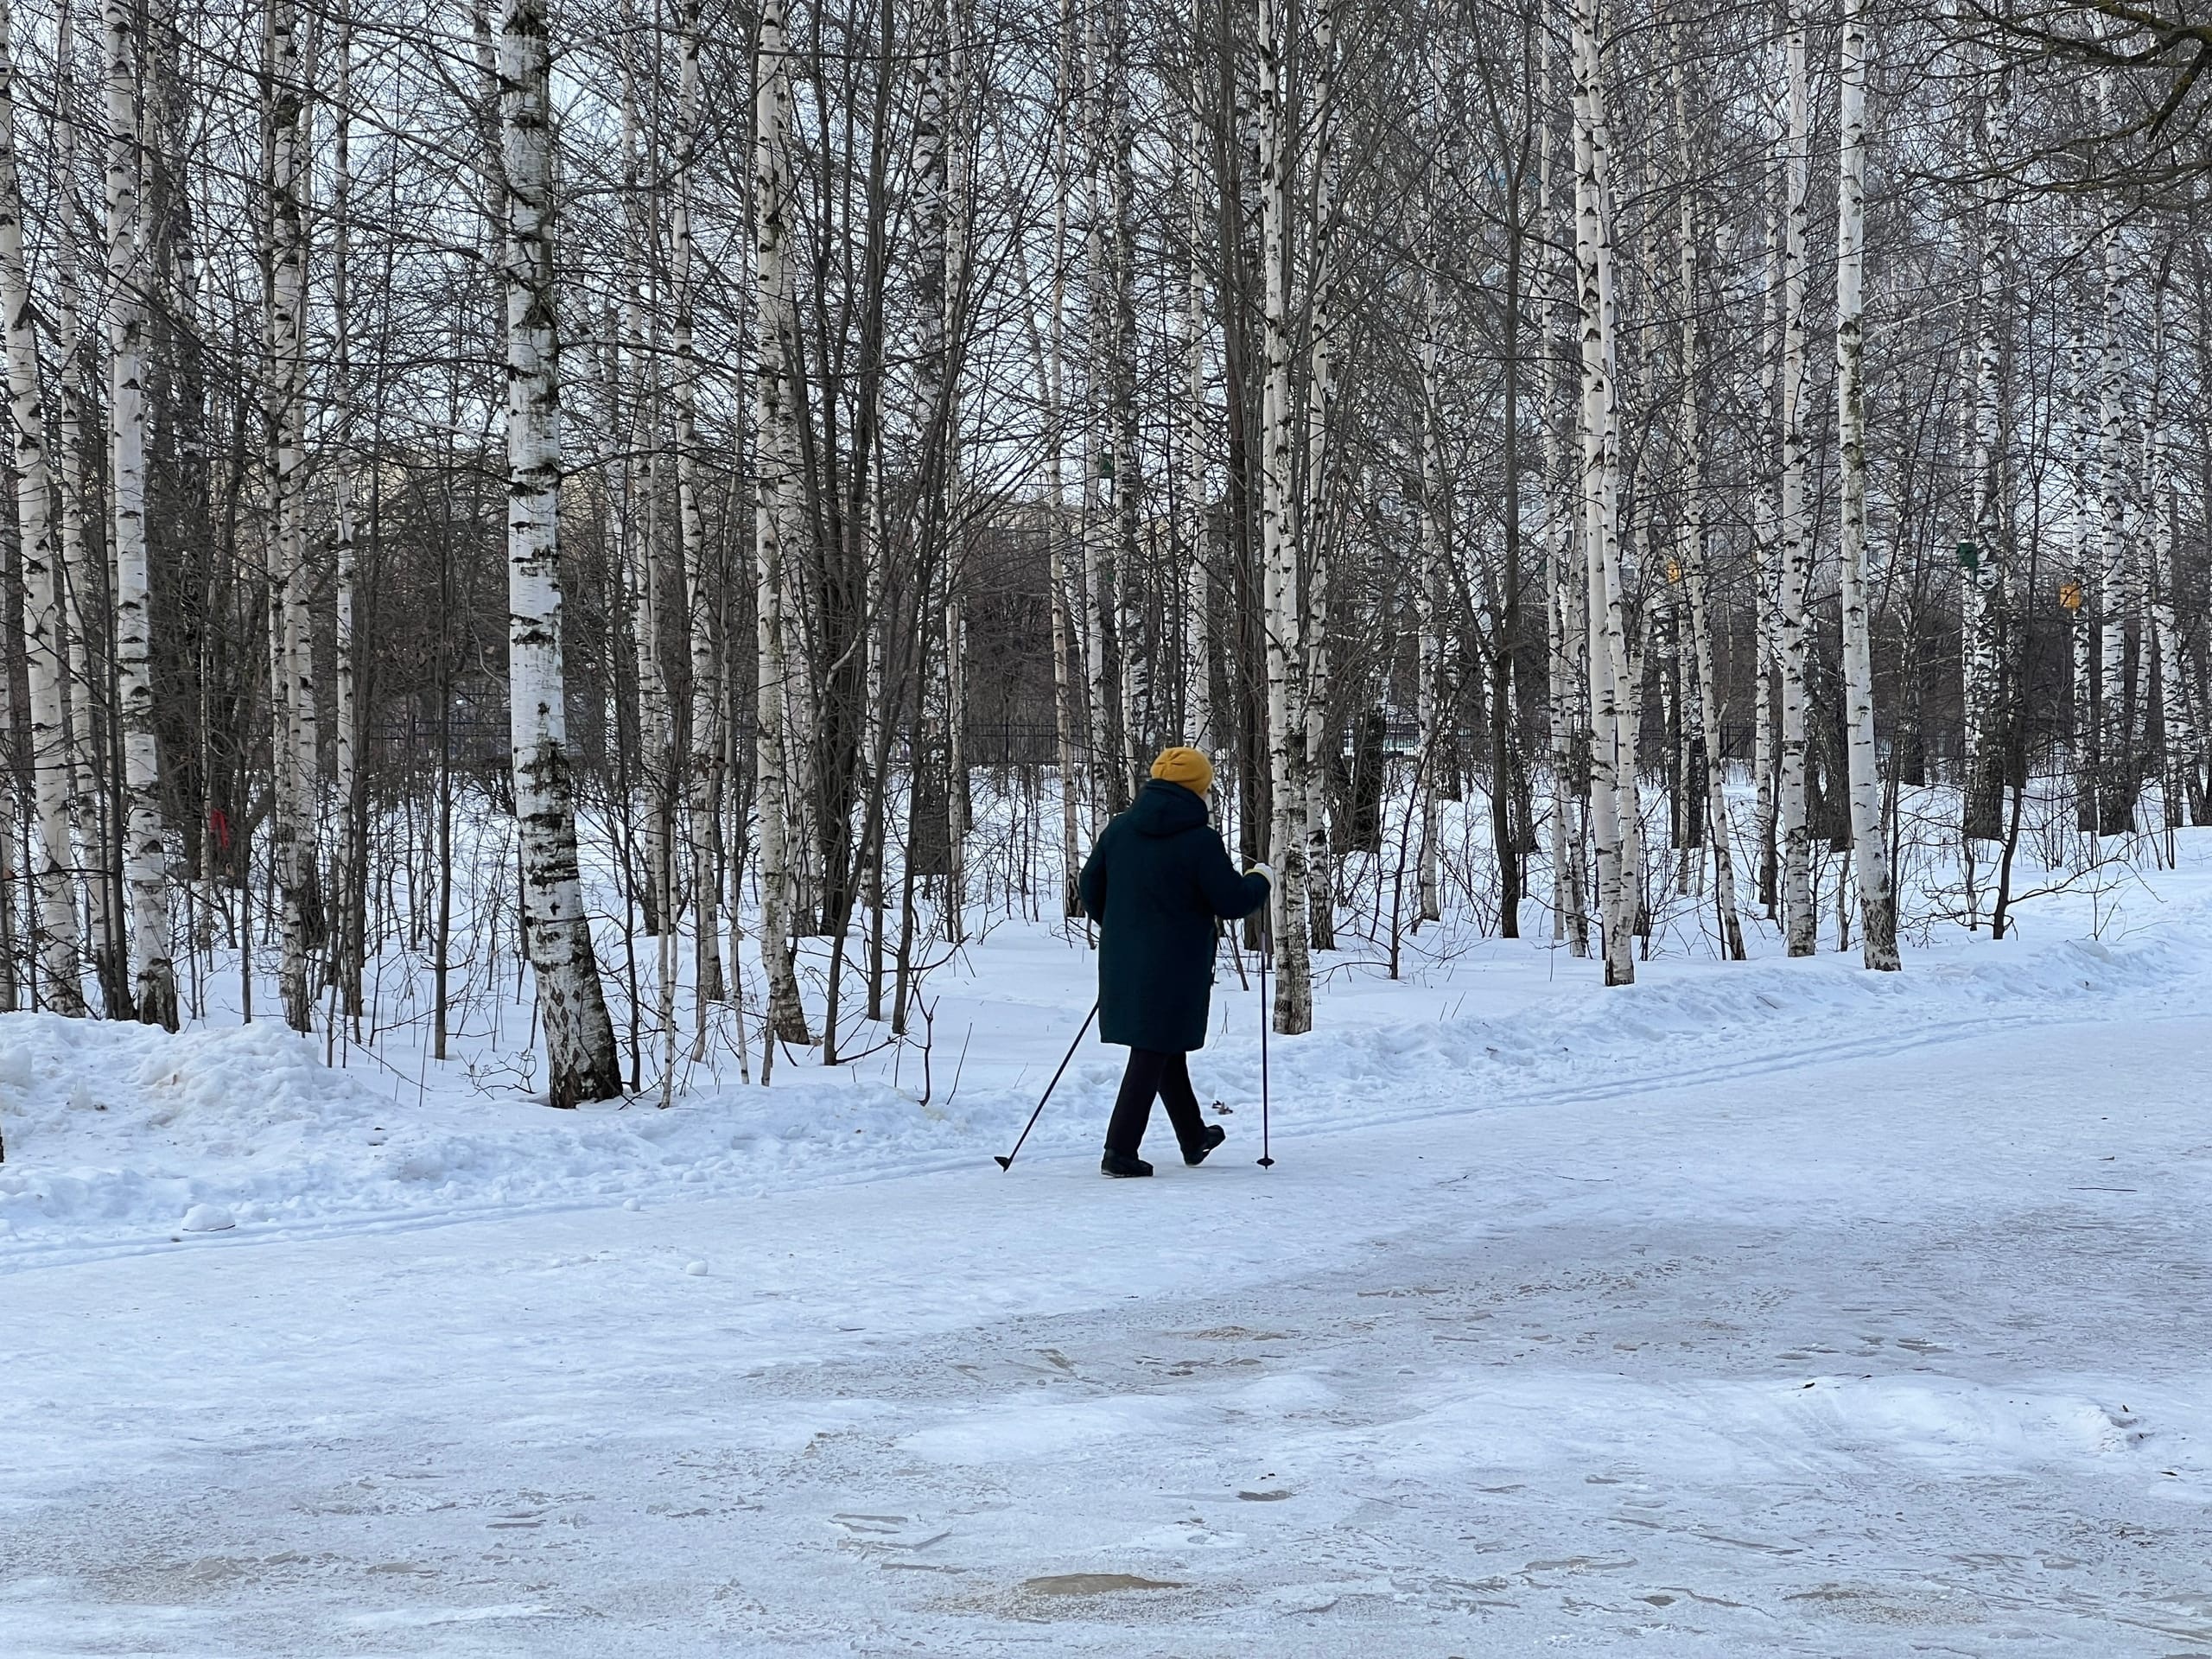 Аномально холодная погода установится в Нижегородской области посреди недели